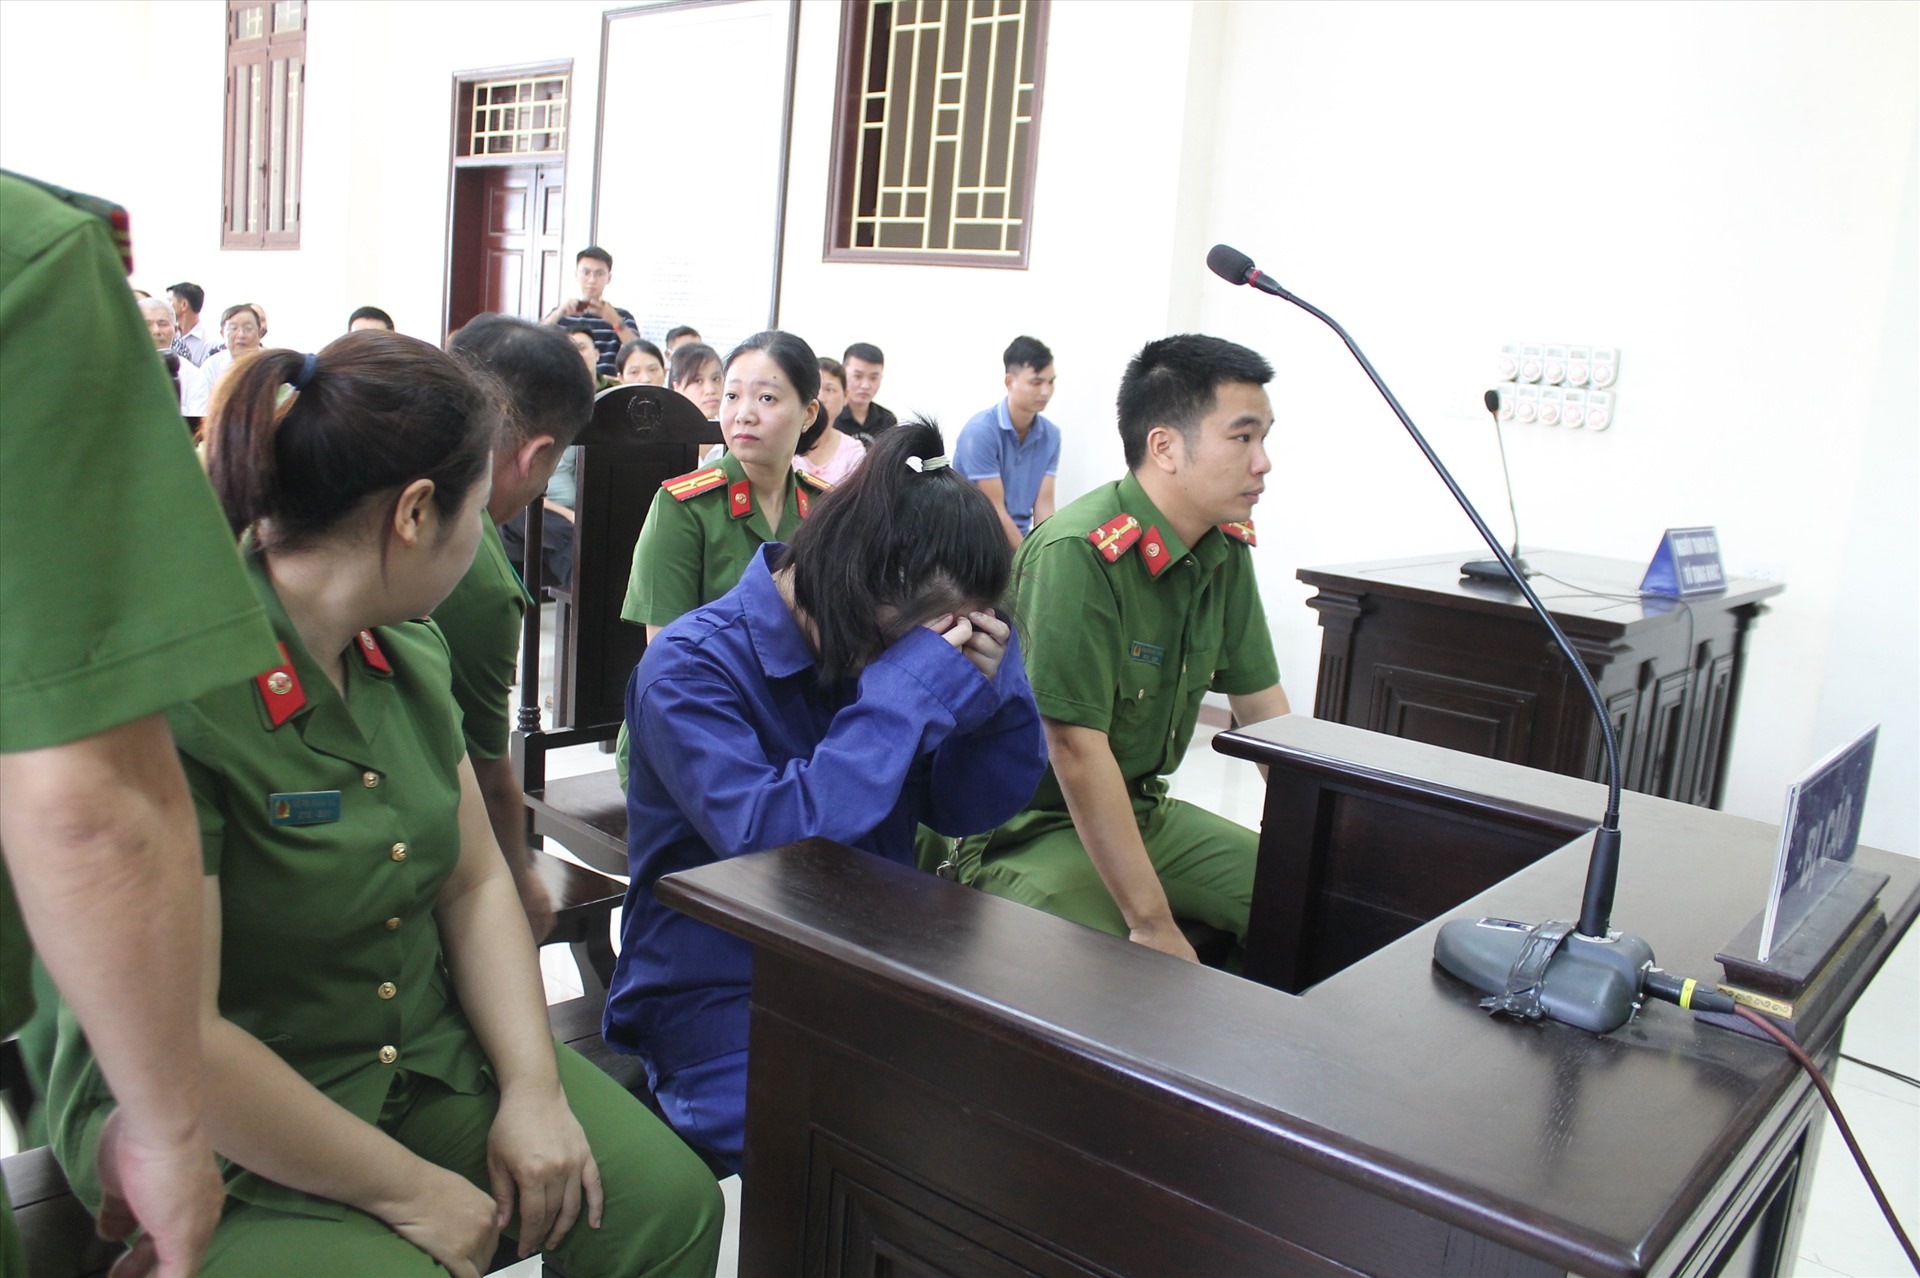 Bị cáo Lại Thị Kiều Trang (sinh năm 1994, xã Vũ Quý, huyện Kiến Xương, tỉnh Thái Bình) có mặt tại phiên tòa sau một lần vắng mặt vì lý do sức khỏe khiến phiên tòa phải hoãn lại. Ảnh ĐL